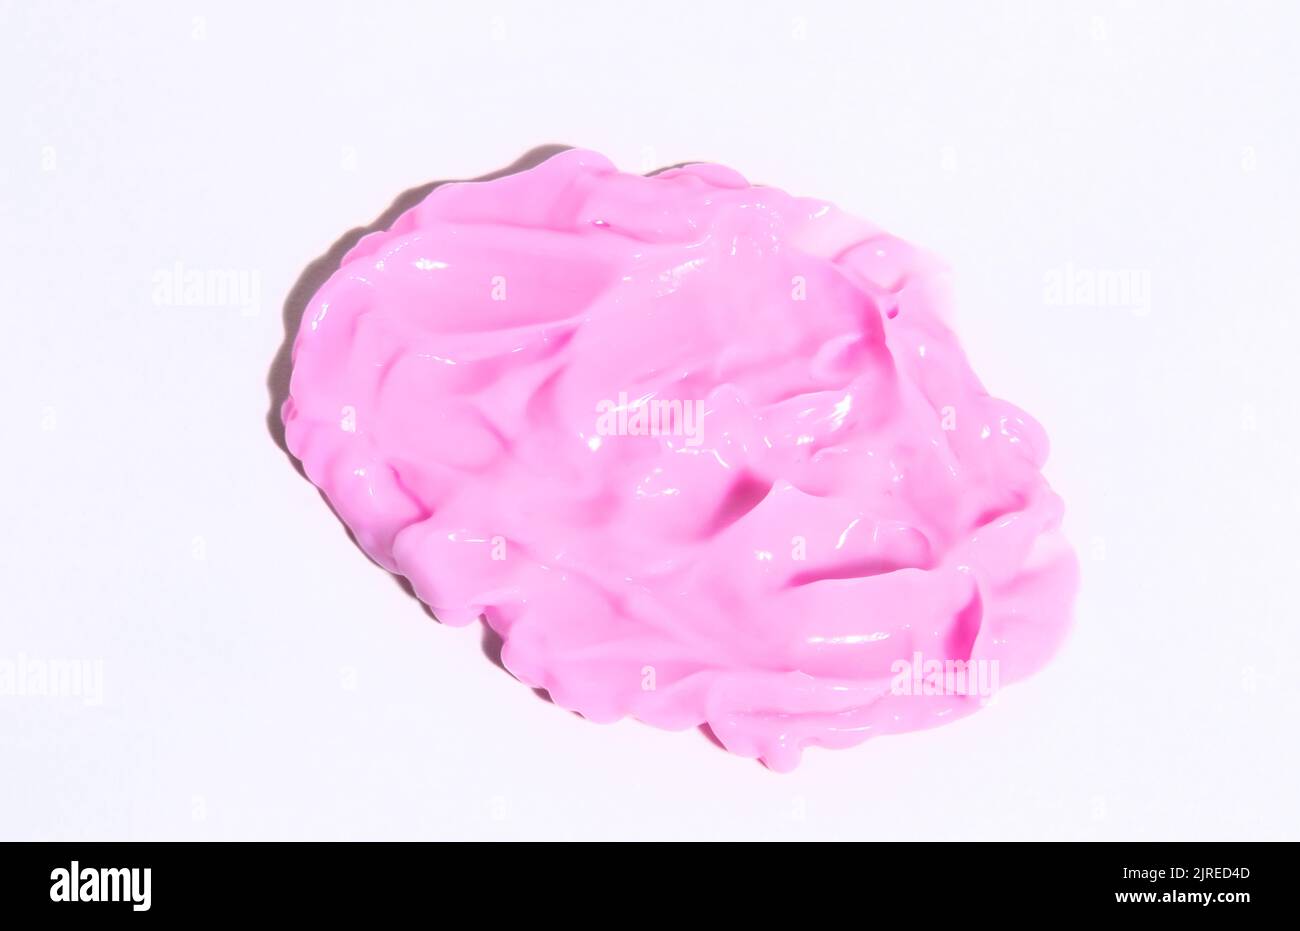 Tupfer von cremigen Texturen rosa Farbe. Abstrich von Hautpflegeprodukt Kosmetik rosa Farbe. Make-up-Creme, feuchtigkeitsspendende Körperlotion oder Handcreme. Stockfoto